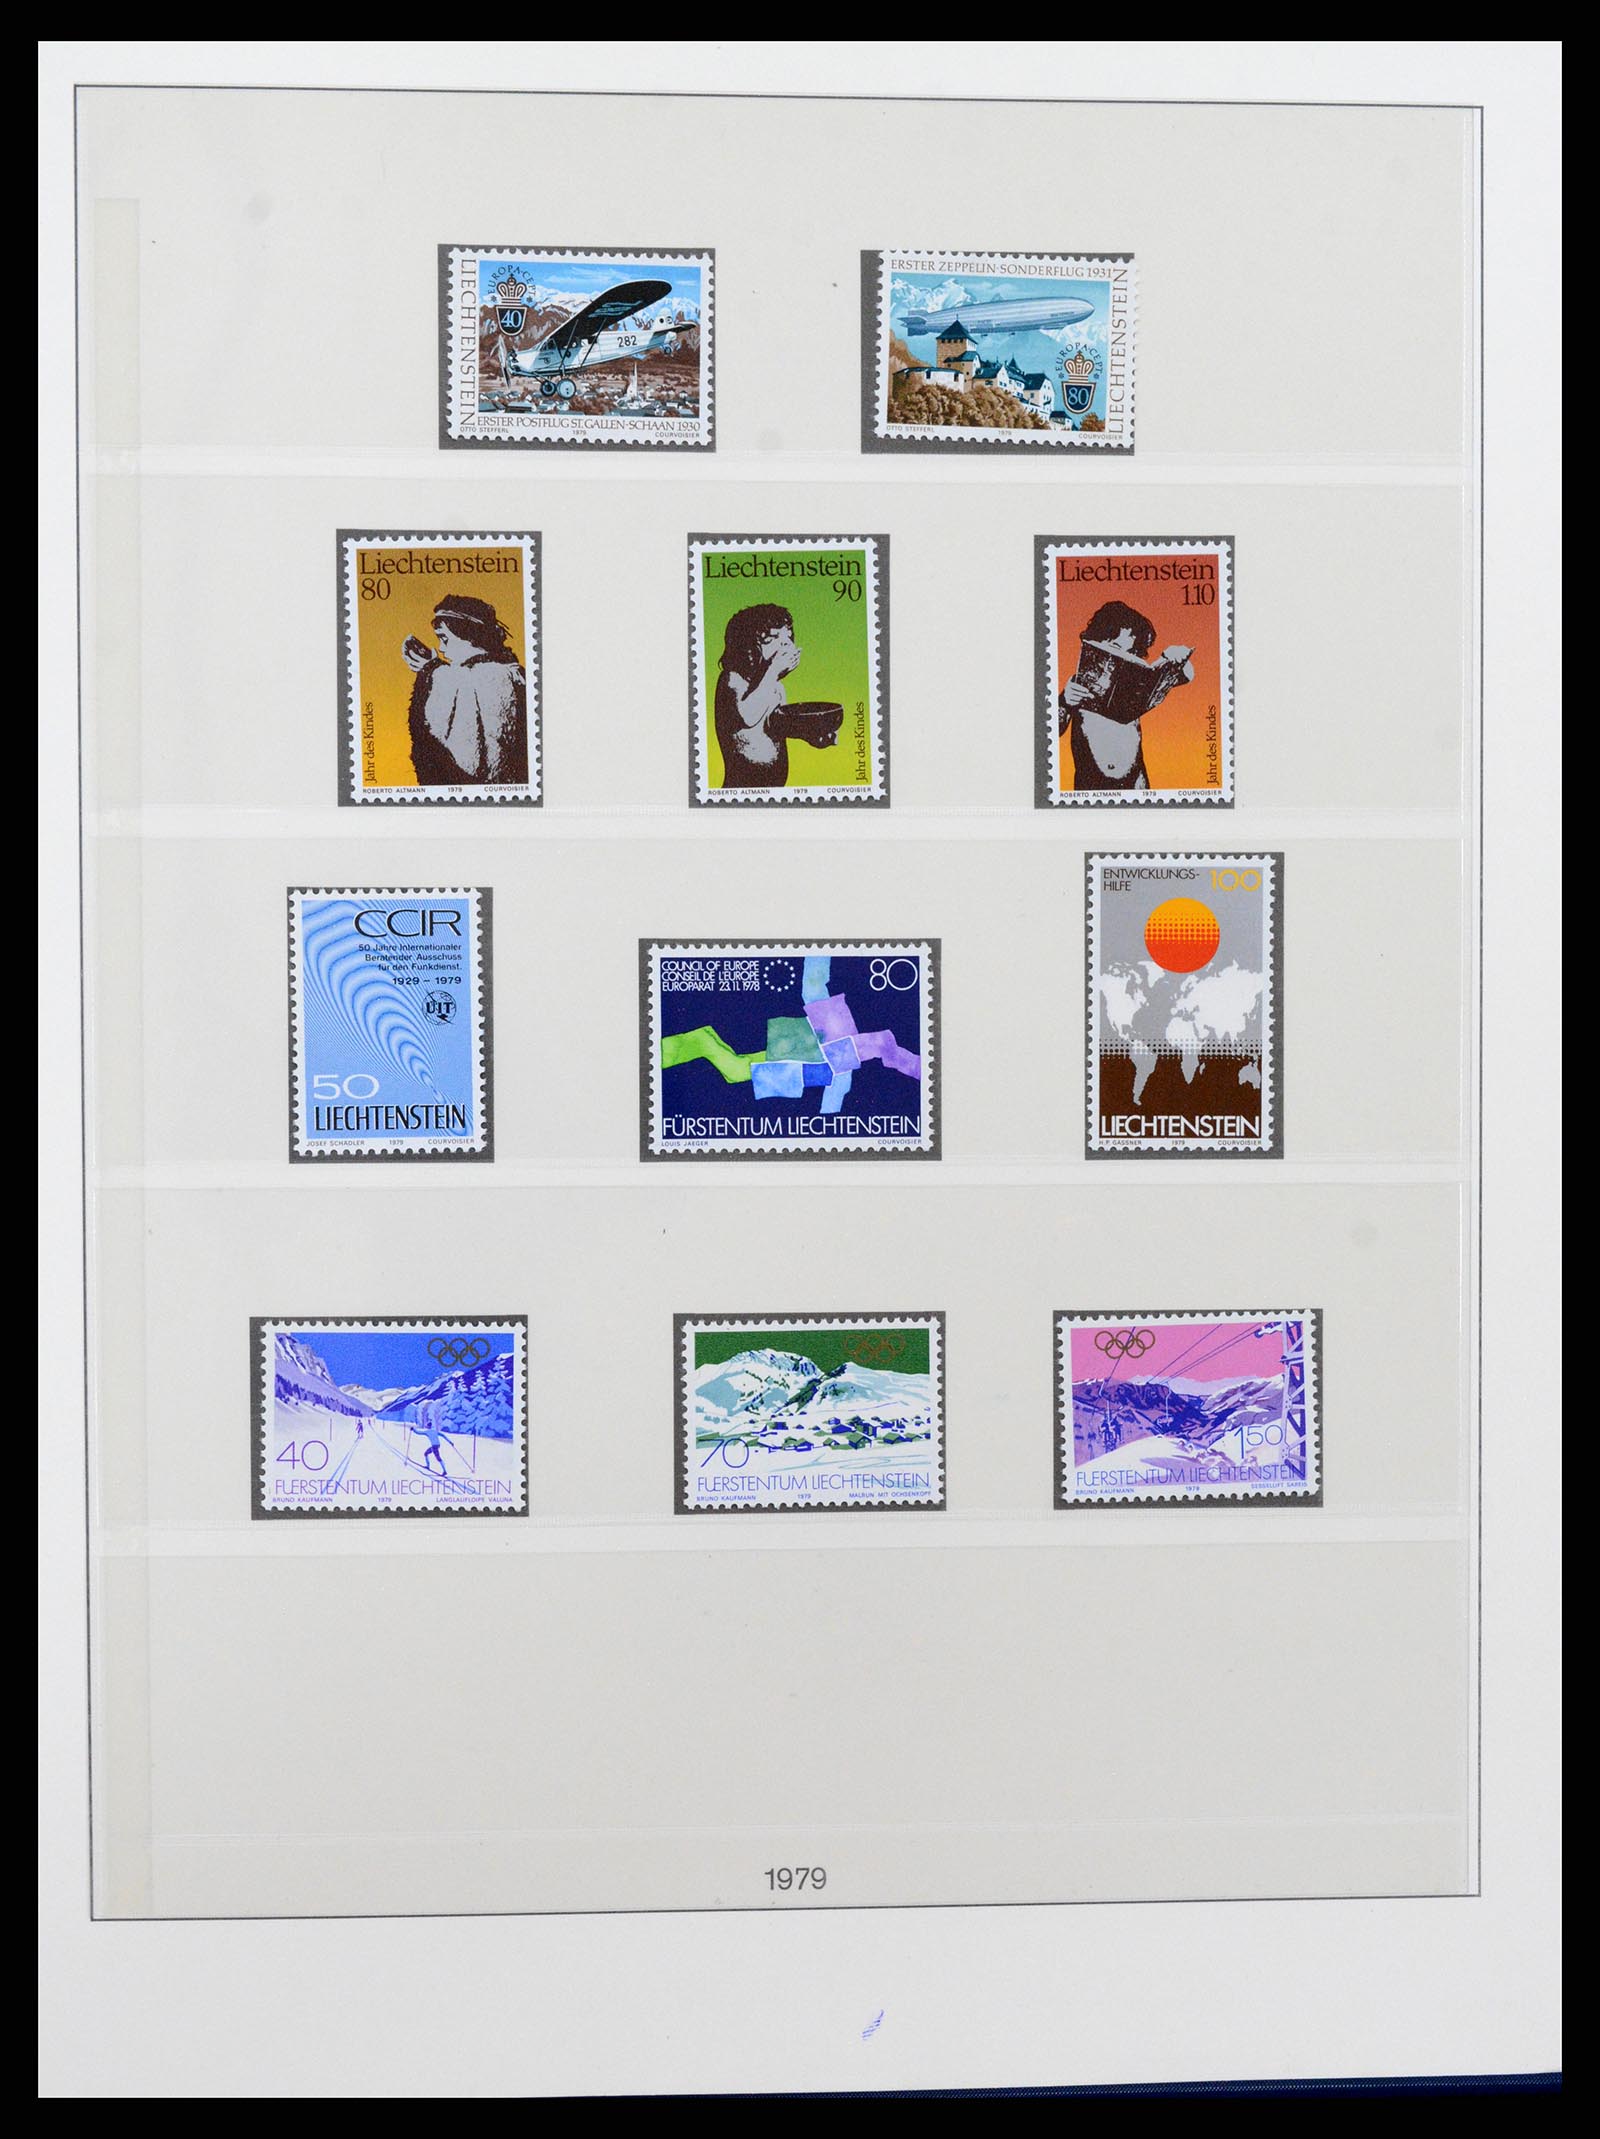 37295 072 - Stamp collection 37295 Liechtenstein 1912-2009.